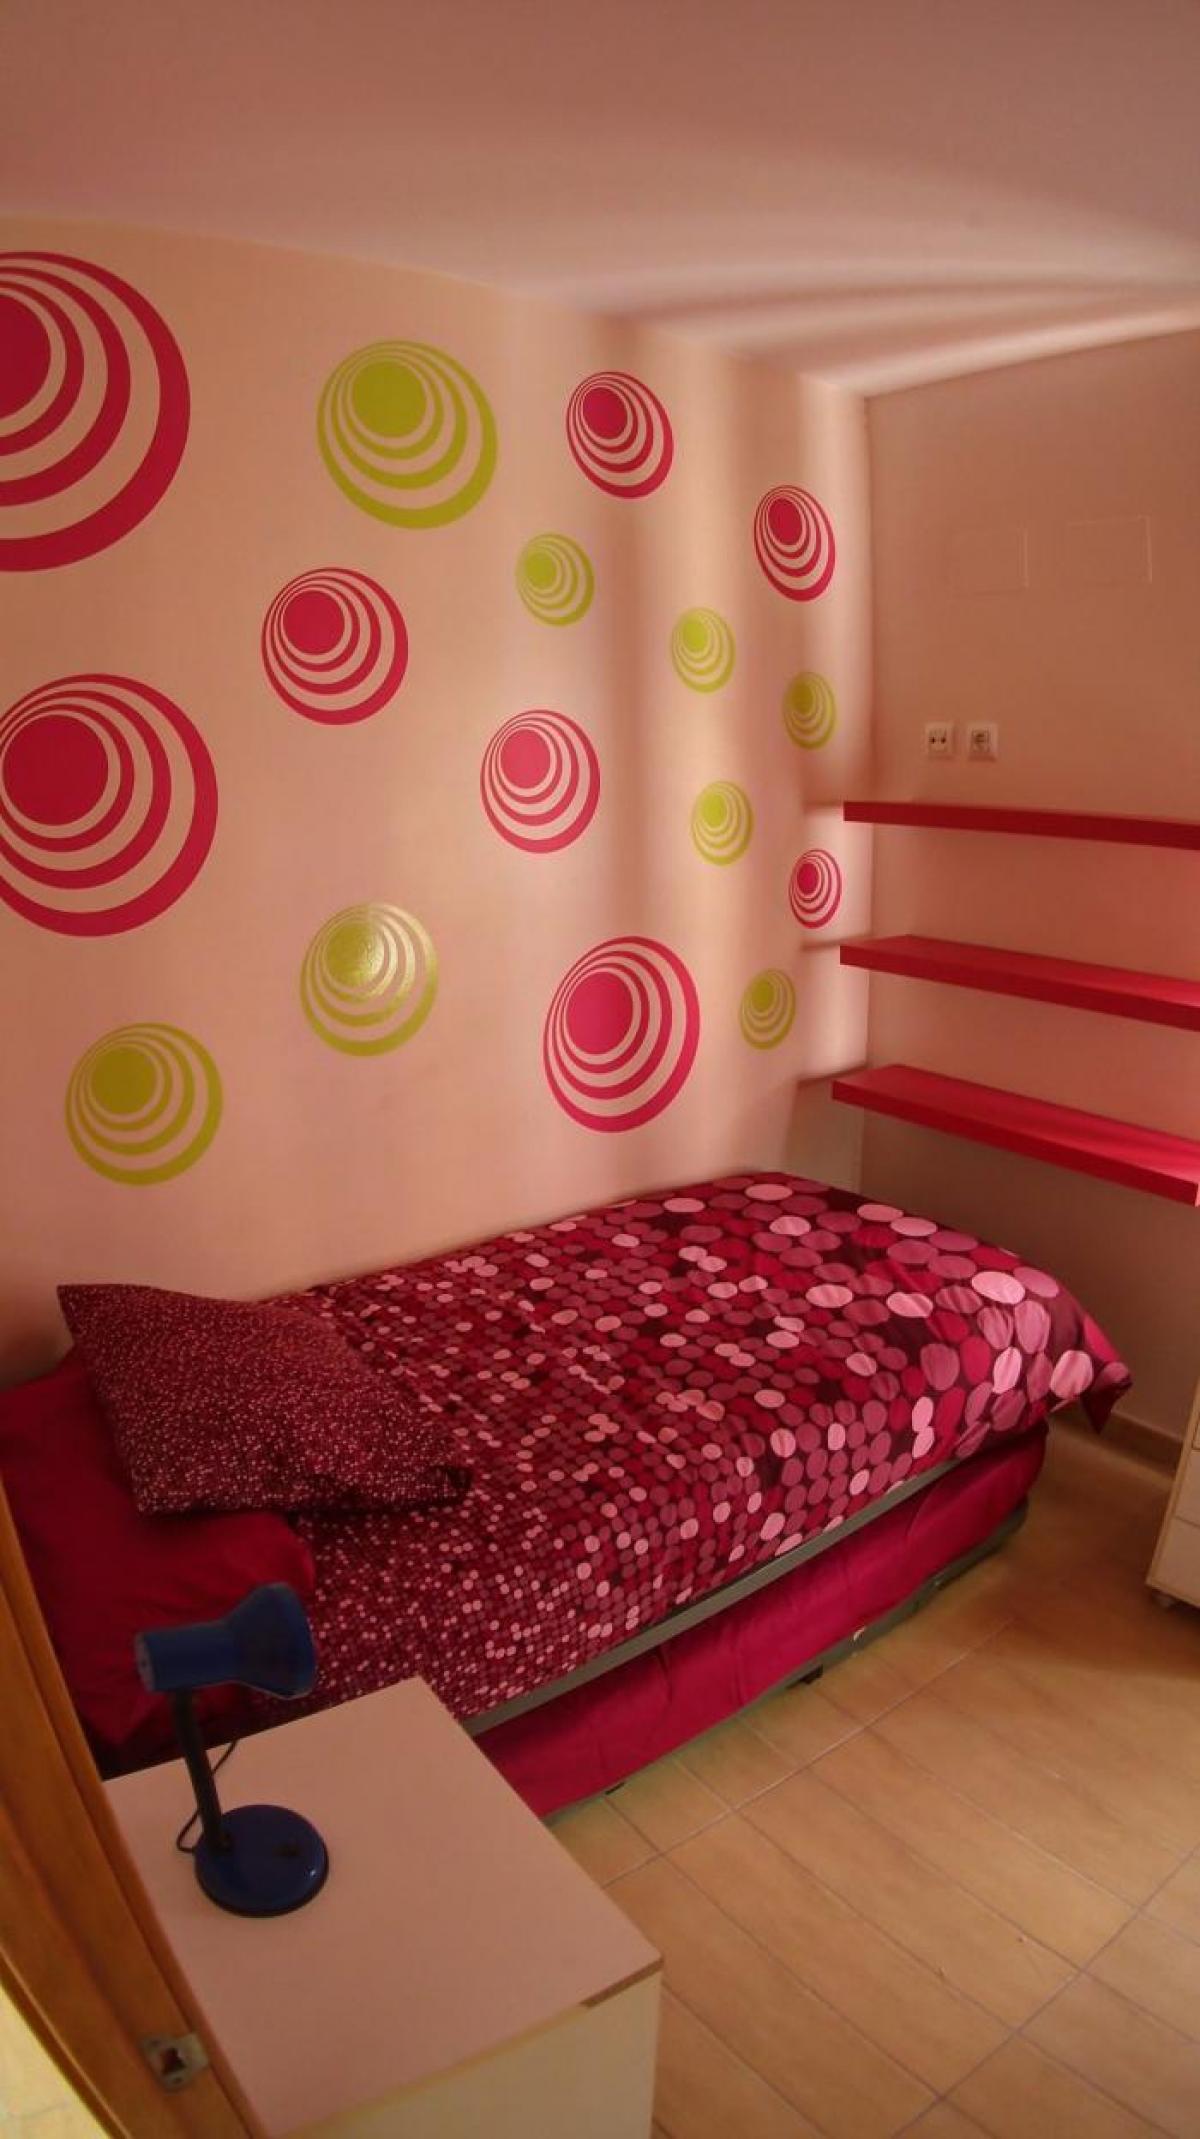 Picture of Apartment For Rent in Cadiz, Cadiz, Spain